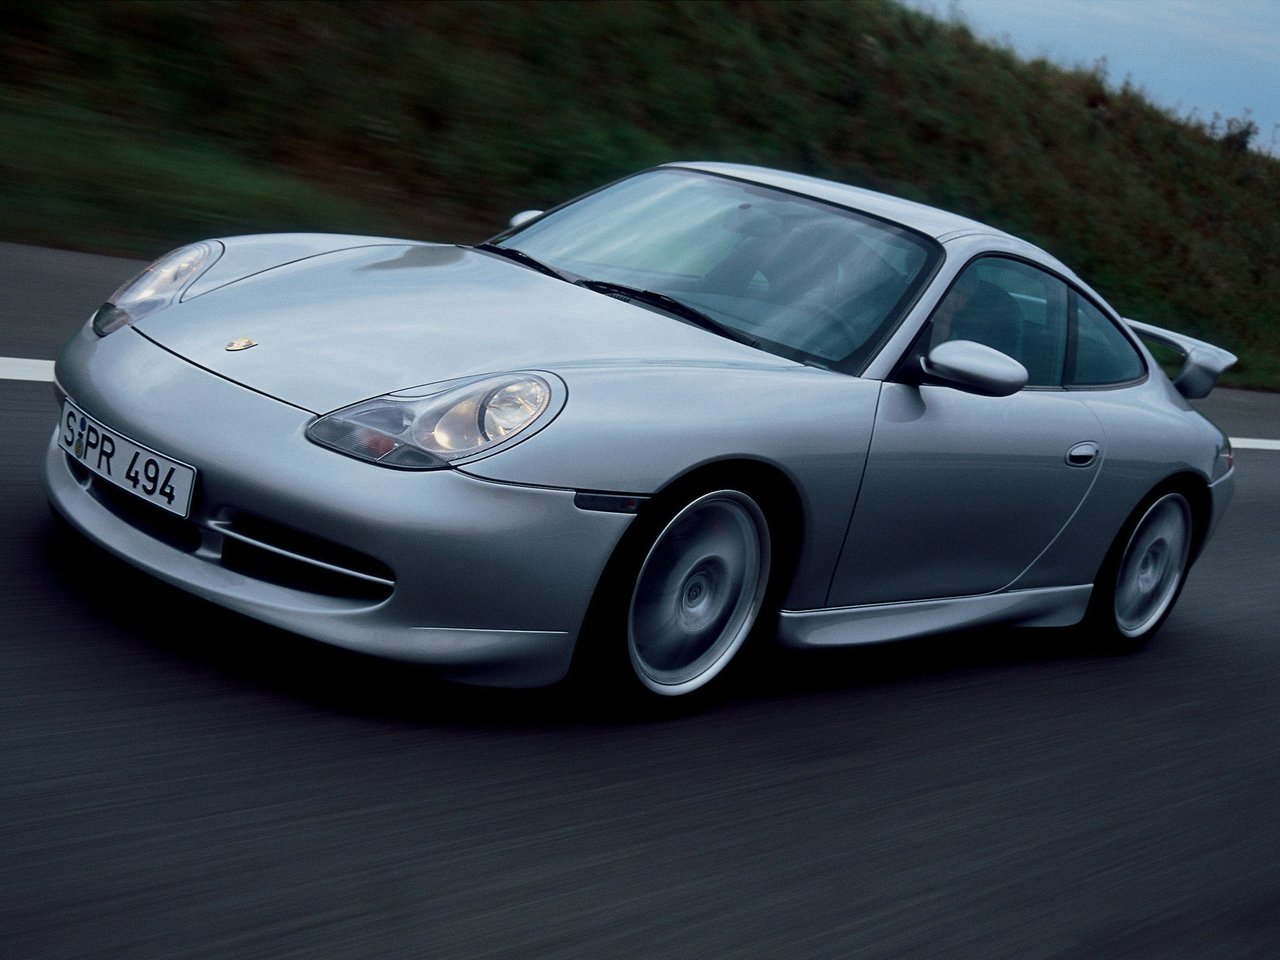 Расход газа одной комплектации купе Porsche 911 GT3. Разница стоимости заправки газом и бензином. Автономный пробег до и после установки ГБО.